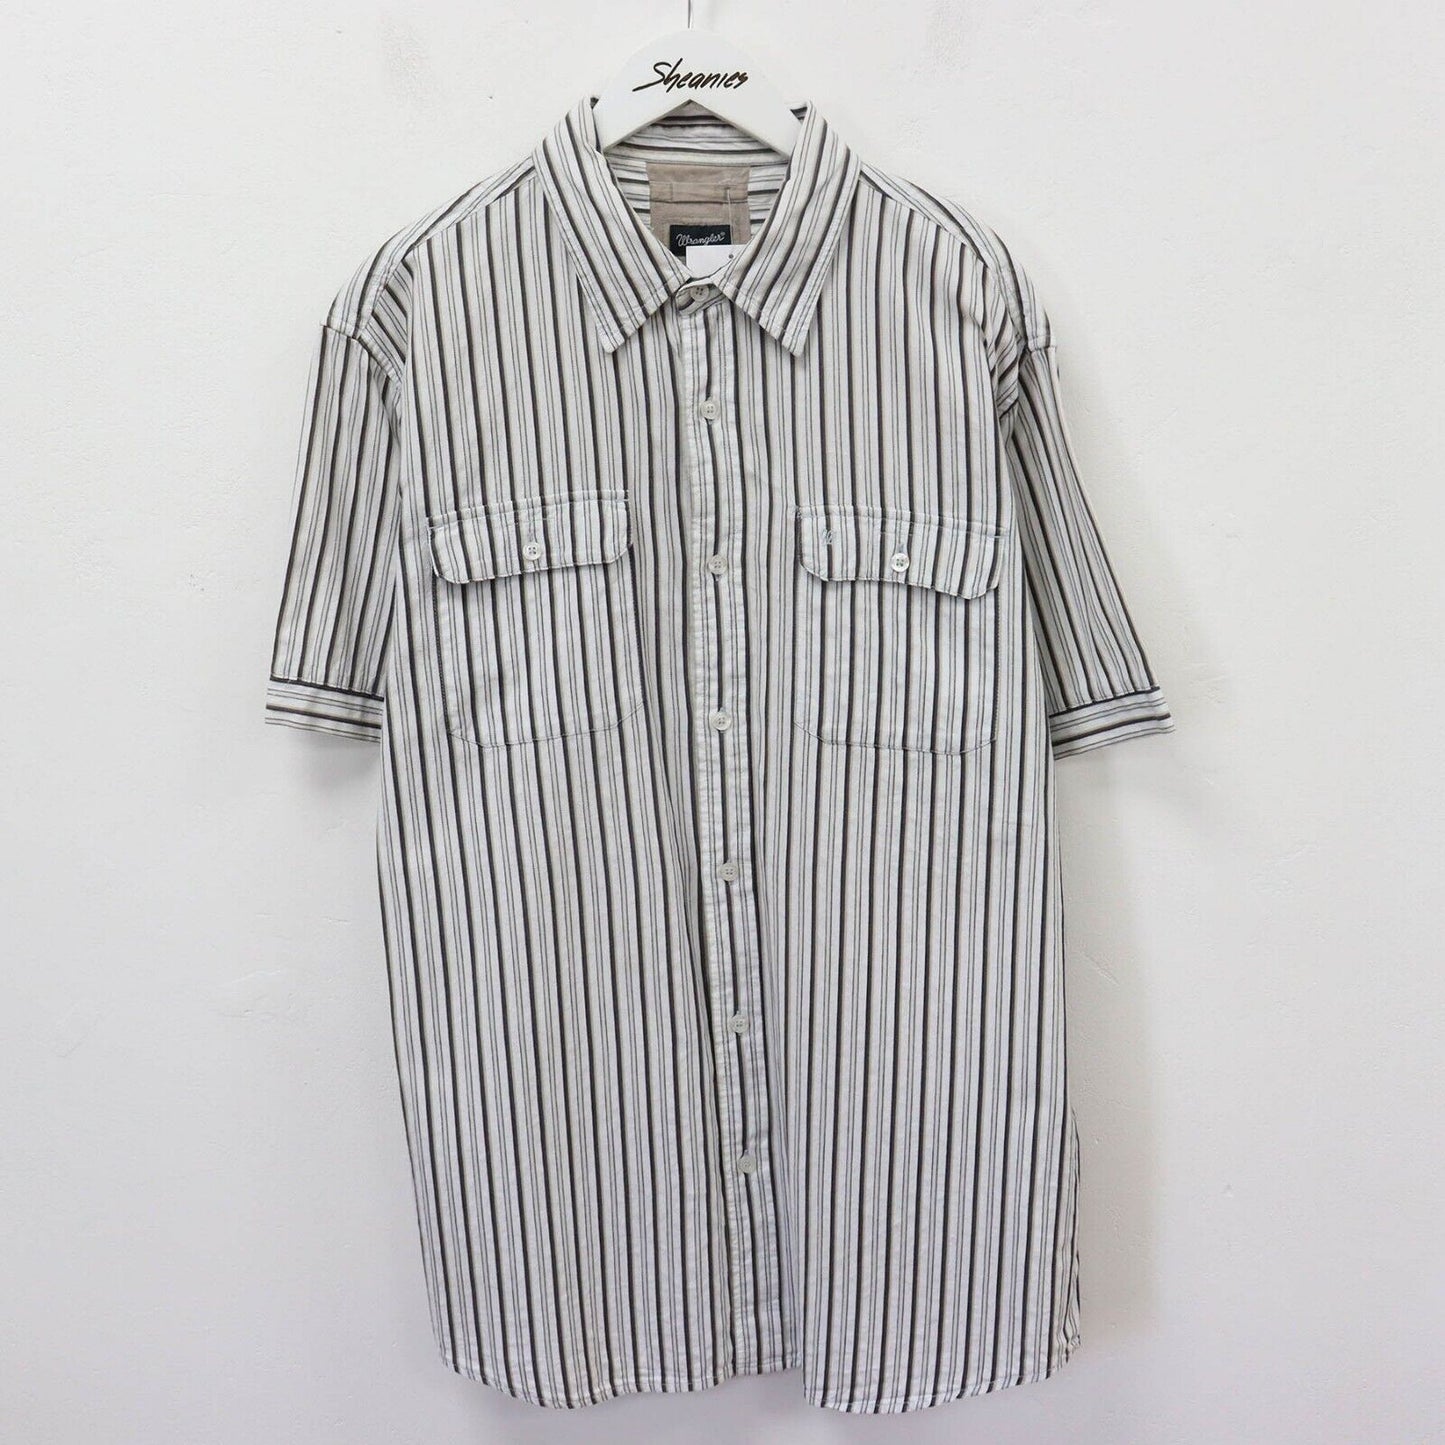 Vintage Wrangler Shirt Size L